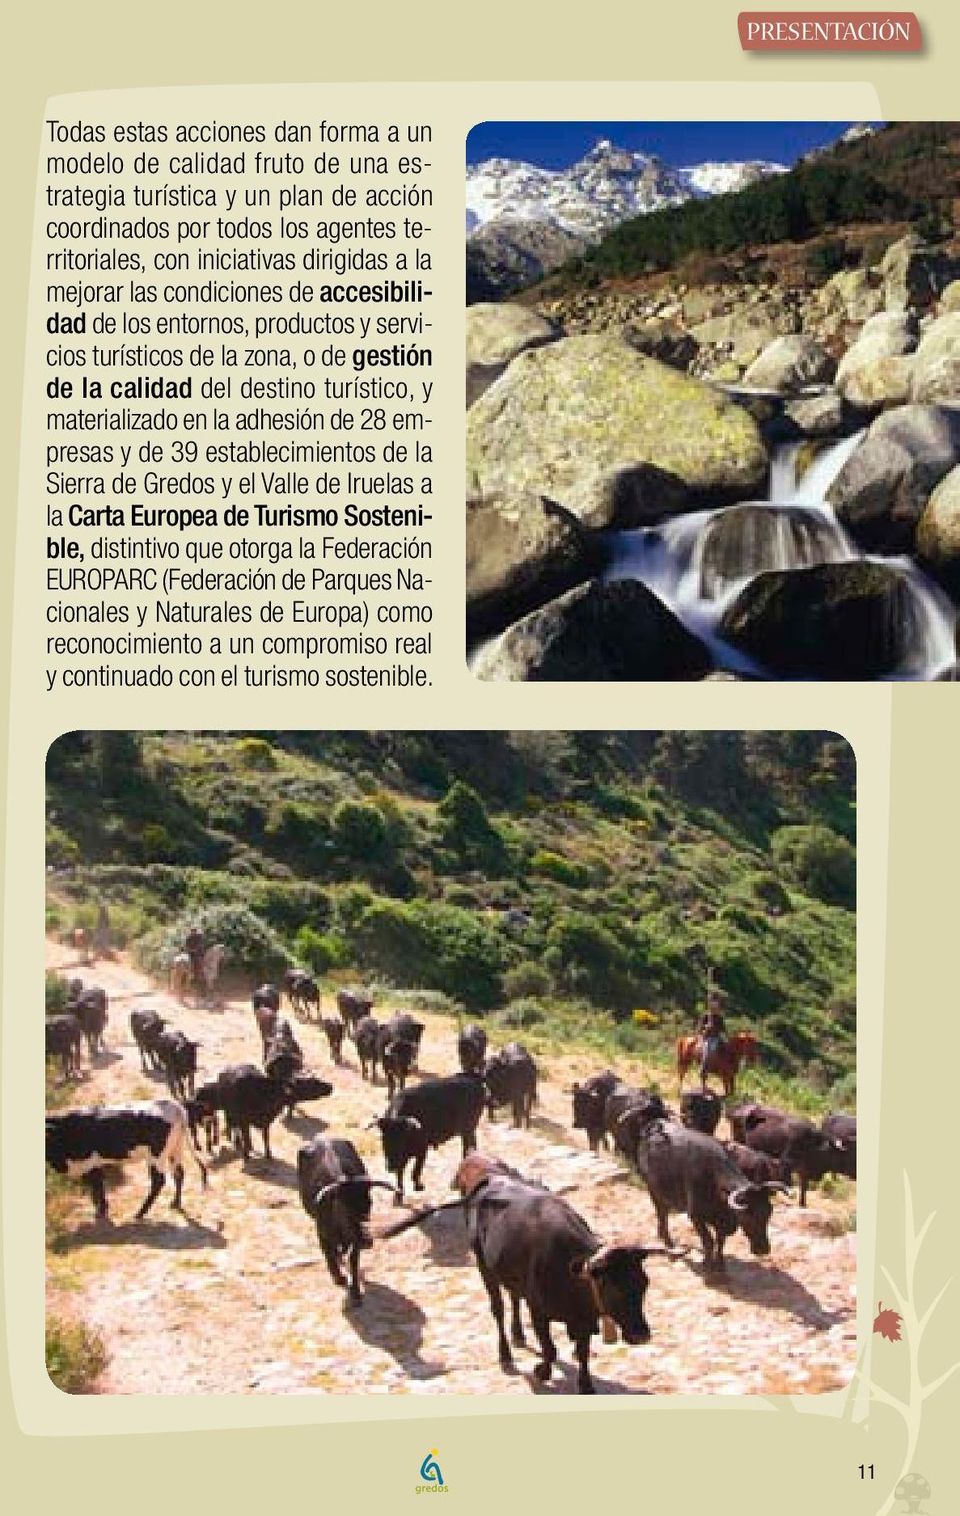 turístico, y materializado en la adhesión de 28 empresas y de 39 establecimientos de la Sierra de Gredos y el Valle de Iruelas a la Carta Europea de Turismo Sostenible,